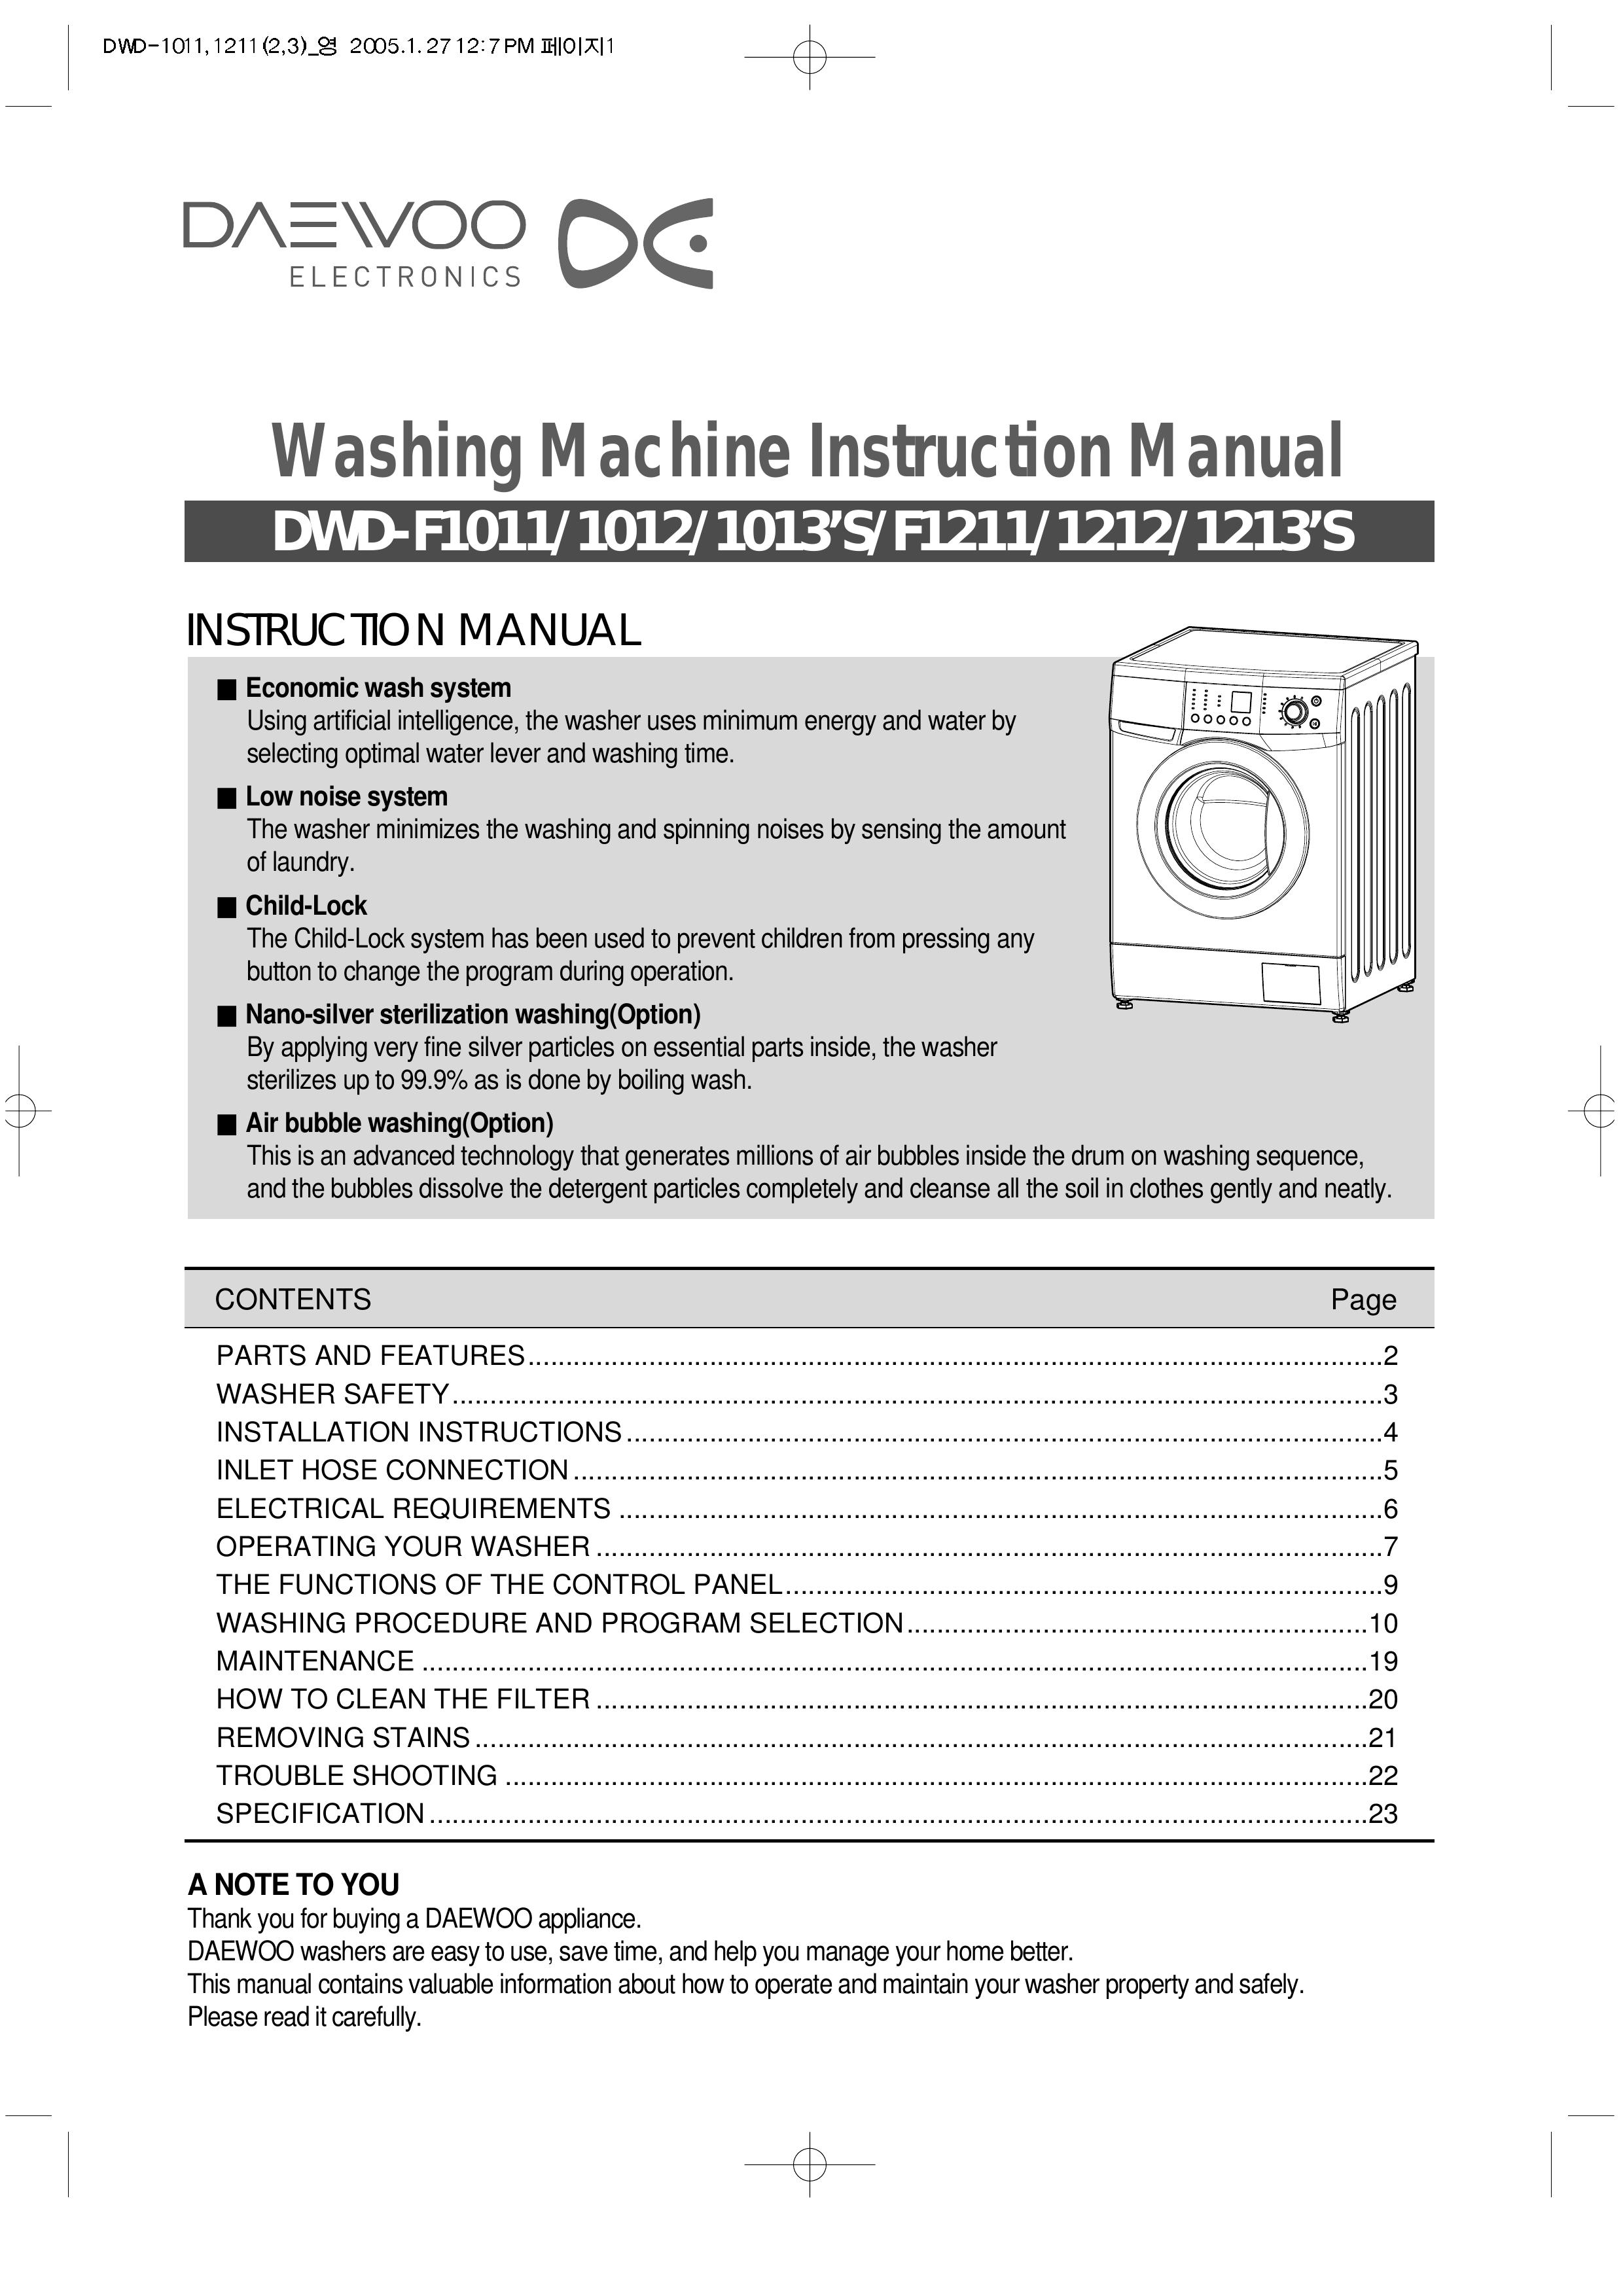 Daewoo DWD-F1013'S Washer User Manual